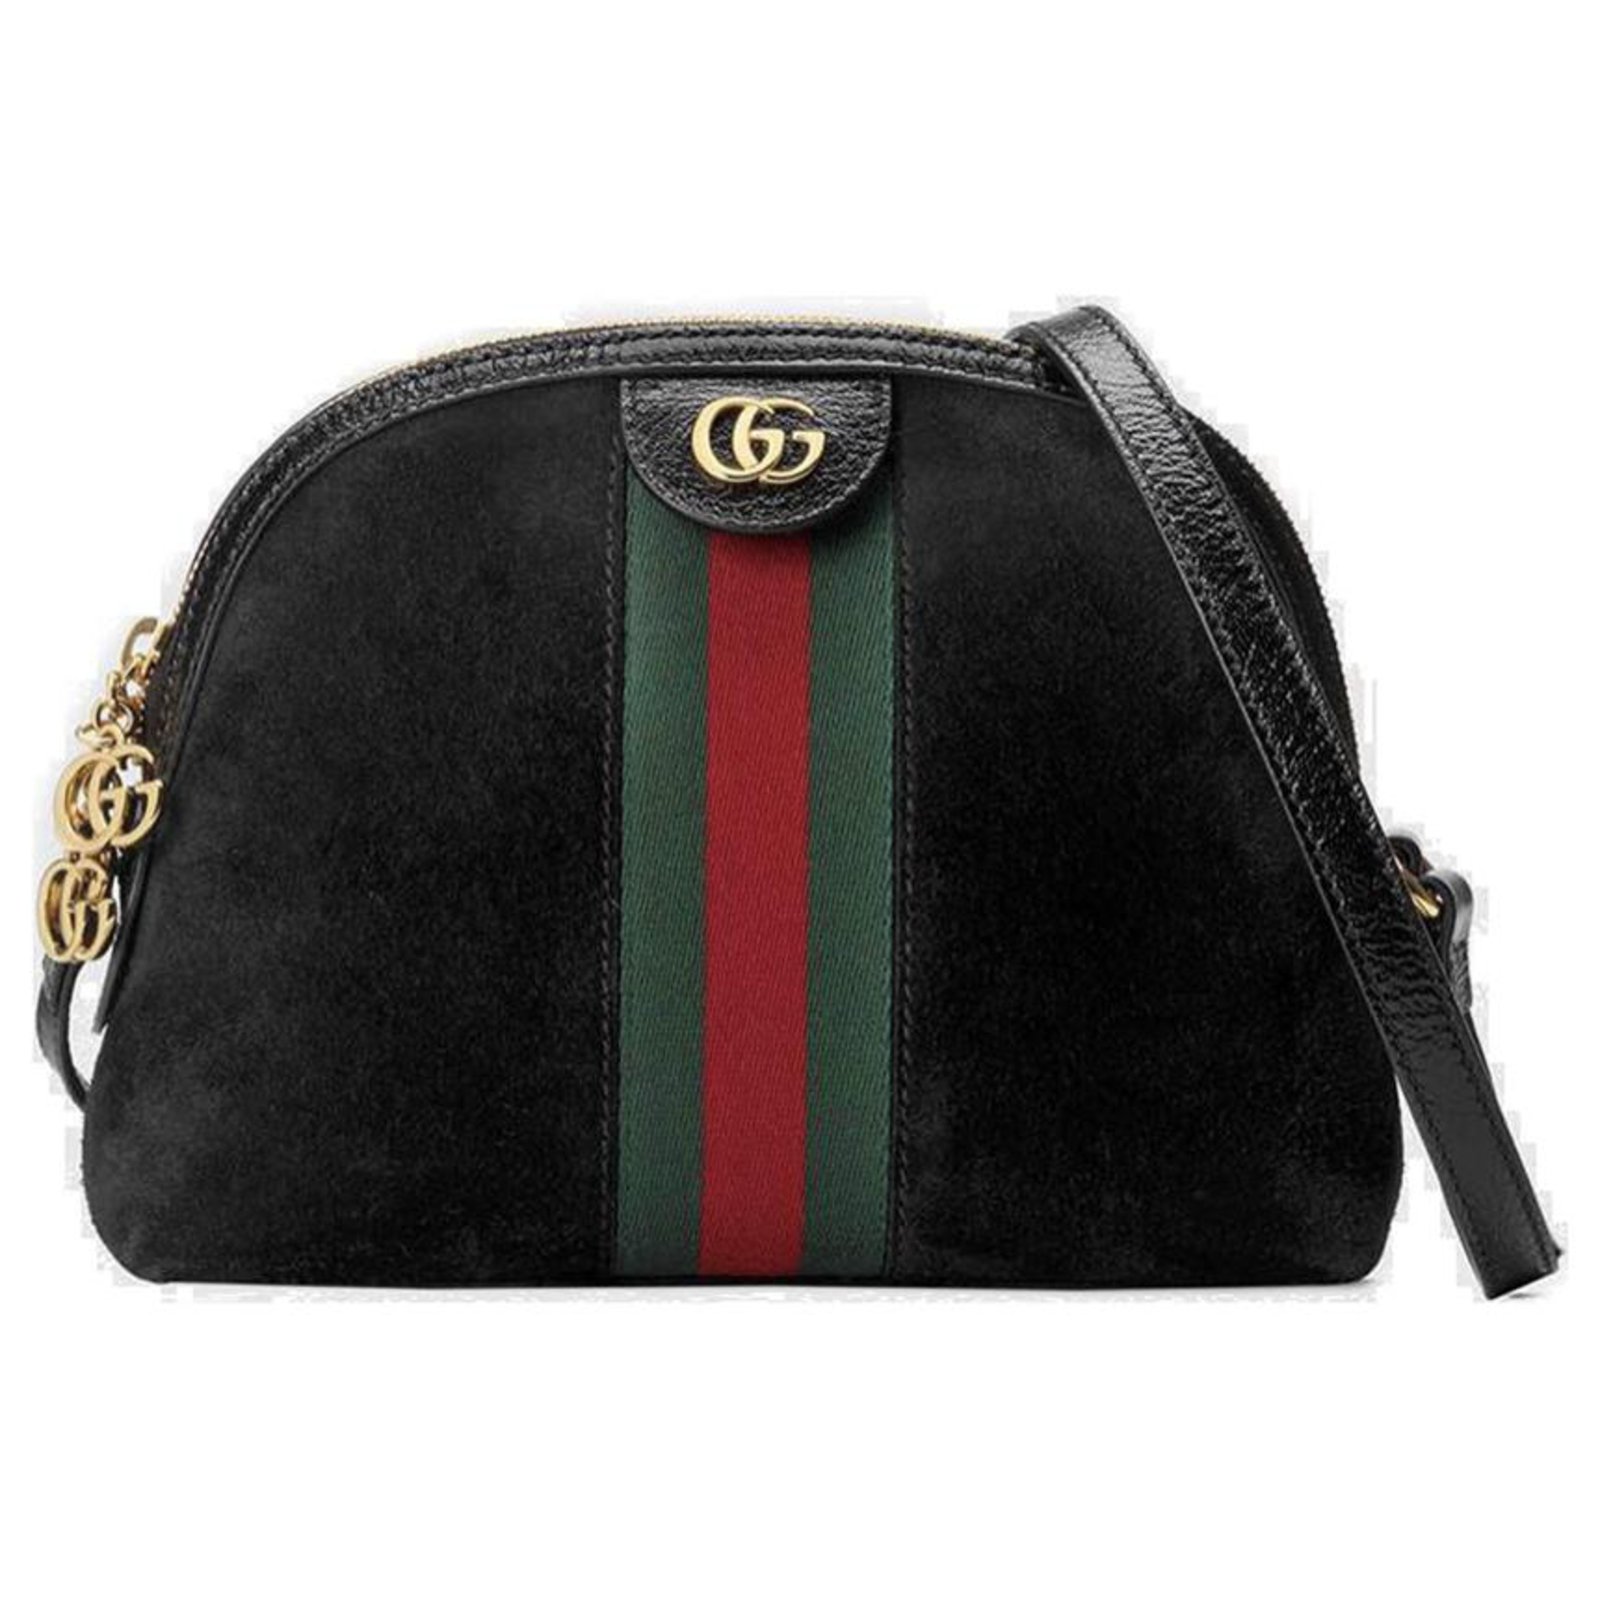 Gucci Ophidia Black Shoulder Bag : r/DHgate